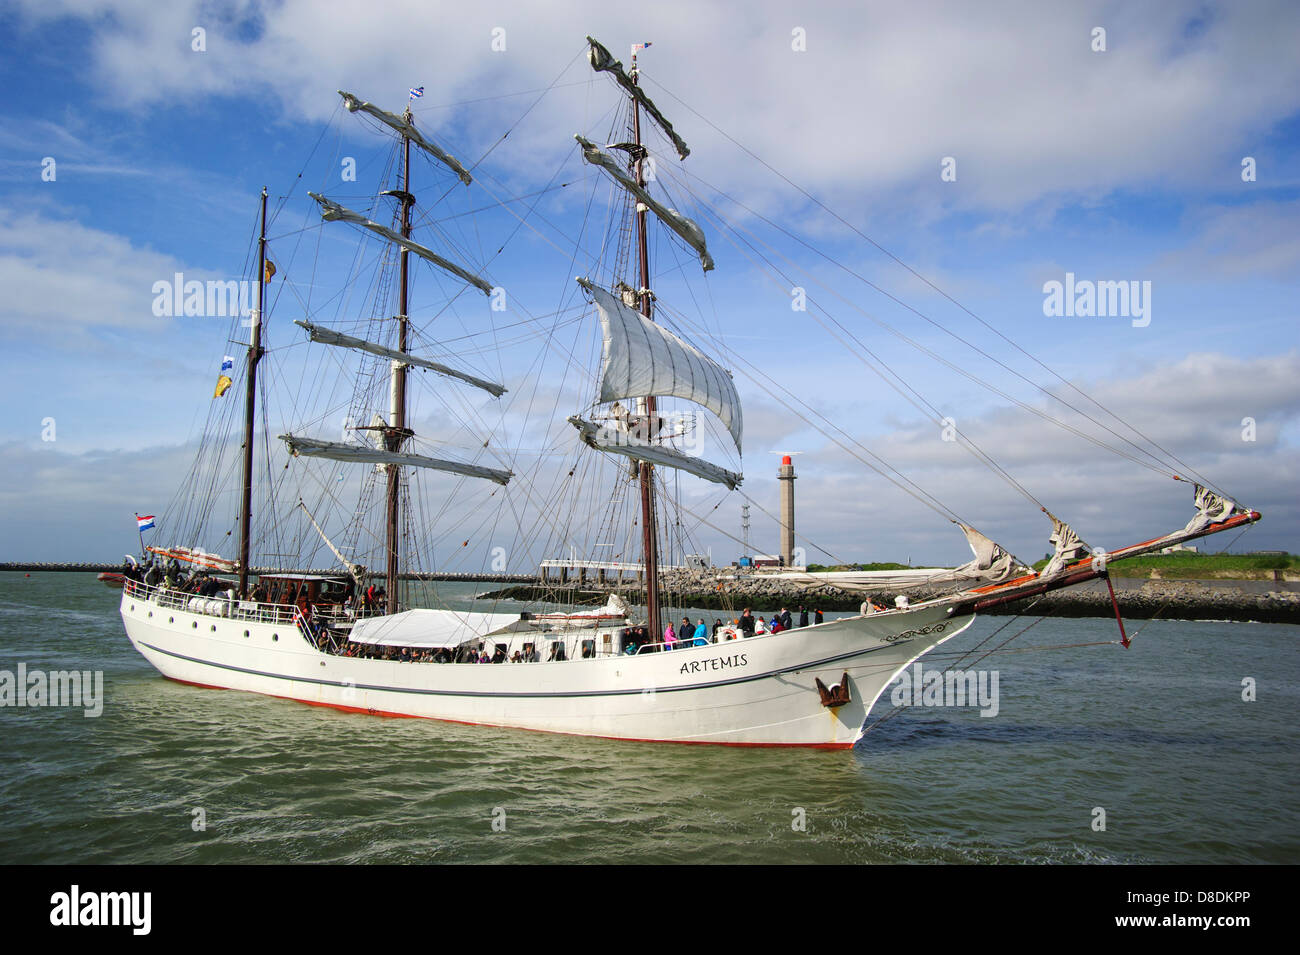 Tres mástiles Artemis barca durante el festival marítimo Oostende voor Anker / Ostende en el ancla de 2013, Bélgica Foto de stock